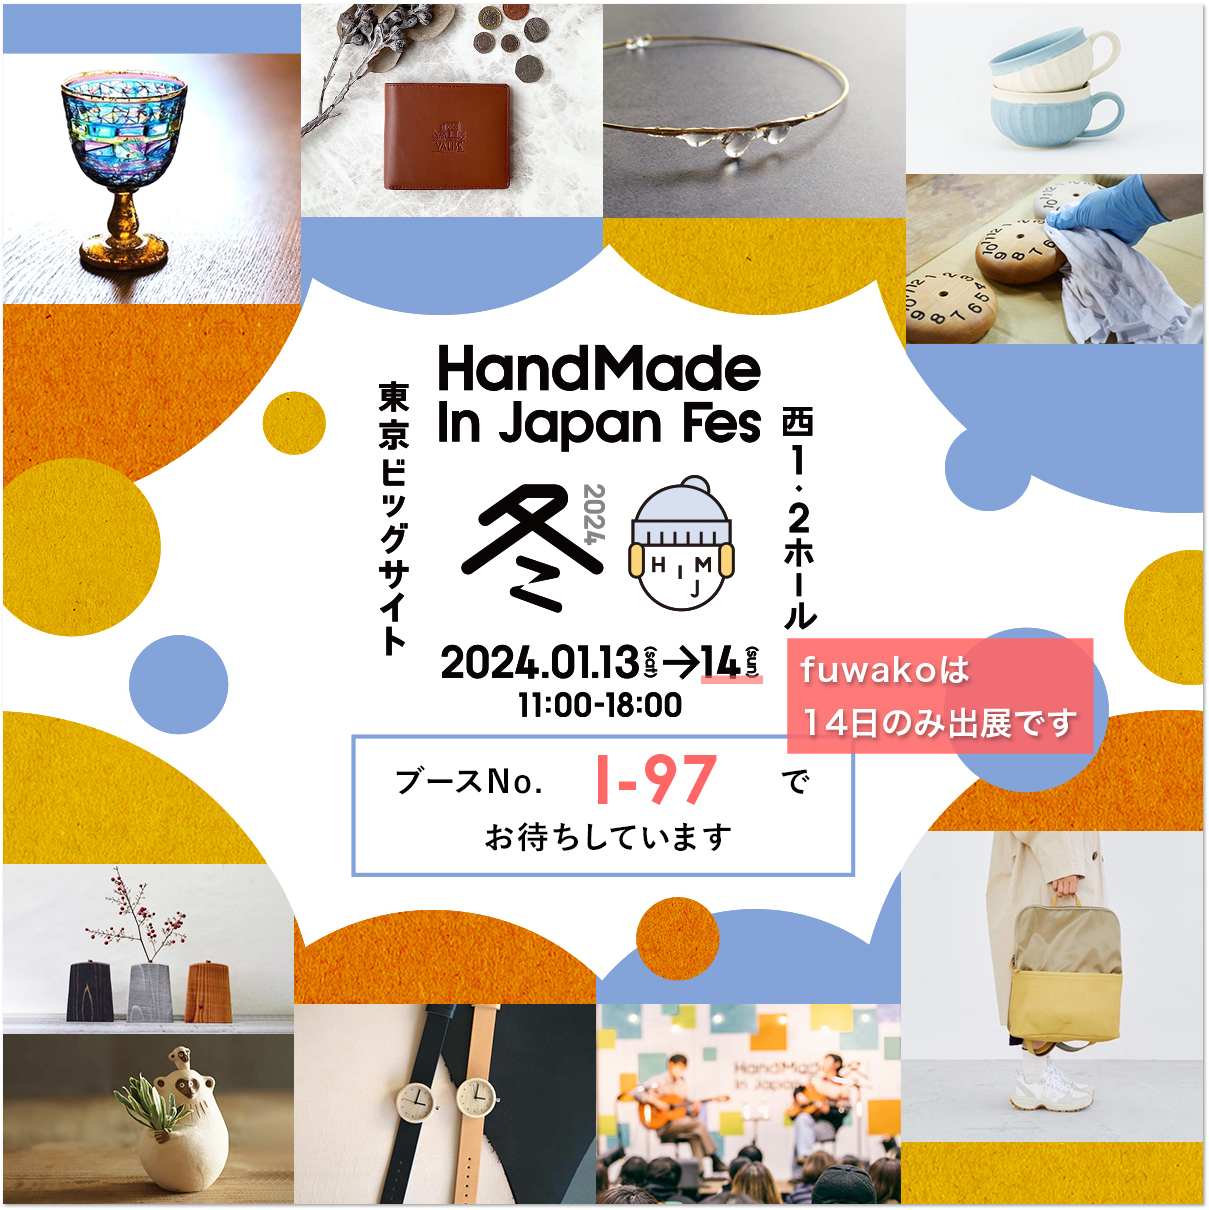 イベント情報：1月14日 Handmade In Japan Fes に出展します